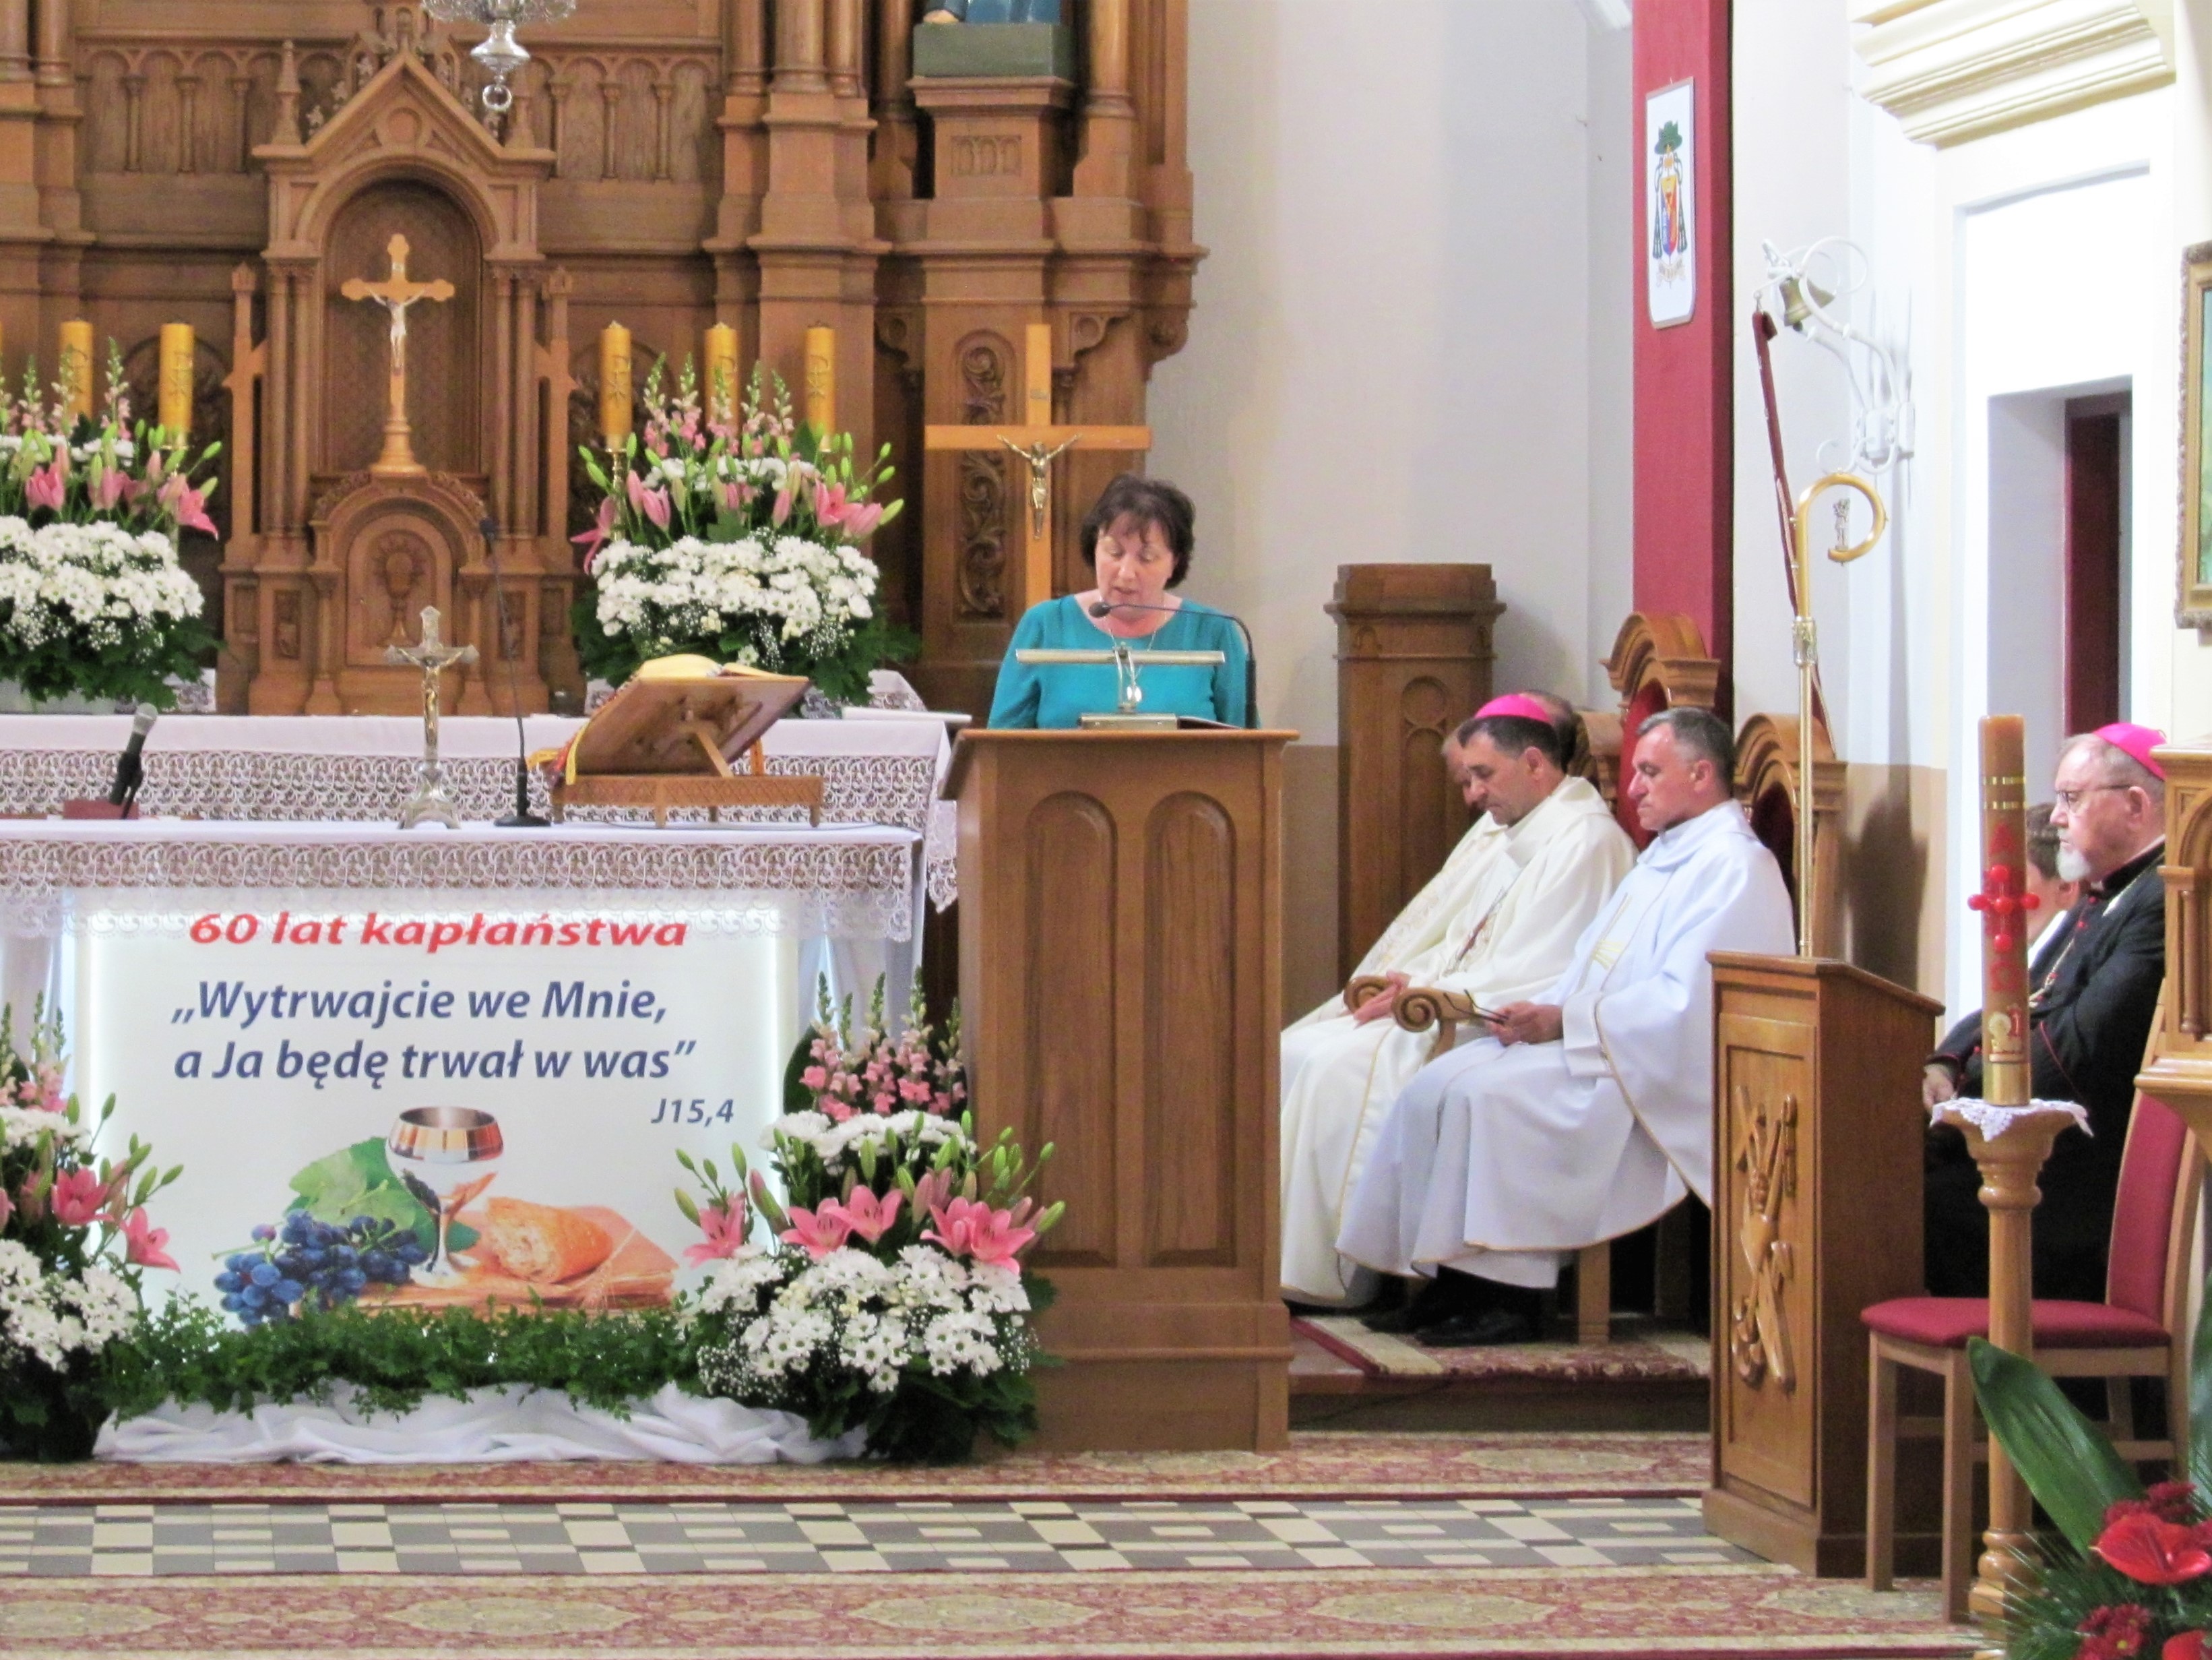 Na zdjęciu moment składania życzeń i gratulacji przez Starostę Elżbietę Sadowską. Widok na drewniany ołtarz kościoła w Niecieczy. Na jego froncie stoją biało - różowe kwitnące kwiaty oraz baner z napisem 60 lat kapłaństwa i cytatem z Pisma Świętego "Wytrwajcie we mnie, a ja będę trwał w Was..." J15, 4. W tle drewniany ozdobny ołtarz. Po prawej stronie widać siedzących księży celebrujących Mszę Świętą, a wśród nich biskupa drohiczyńskiego Piotra Sawczuka oraz biskupa seniora Antoniego Pacyfika - Dydycza.